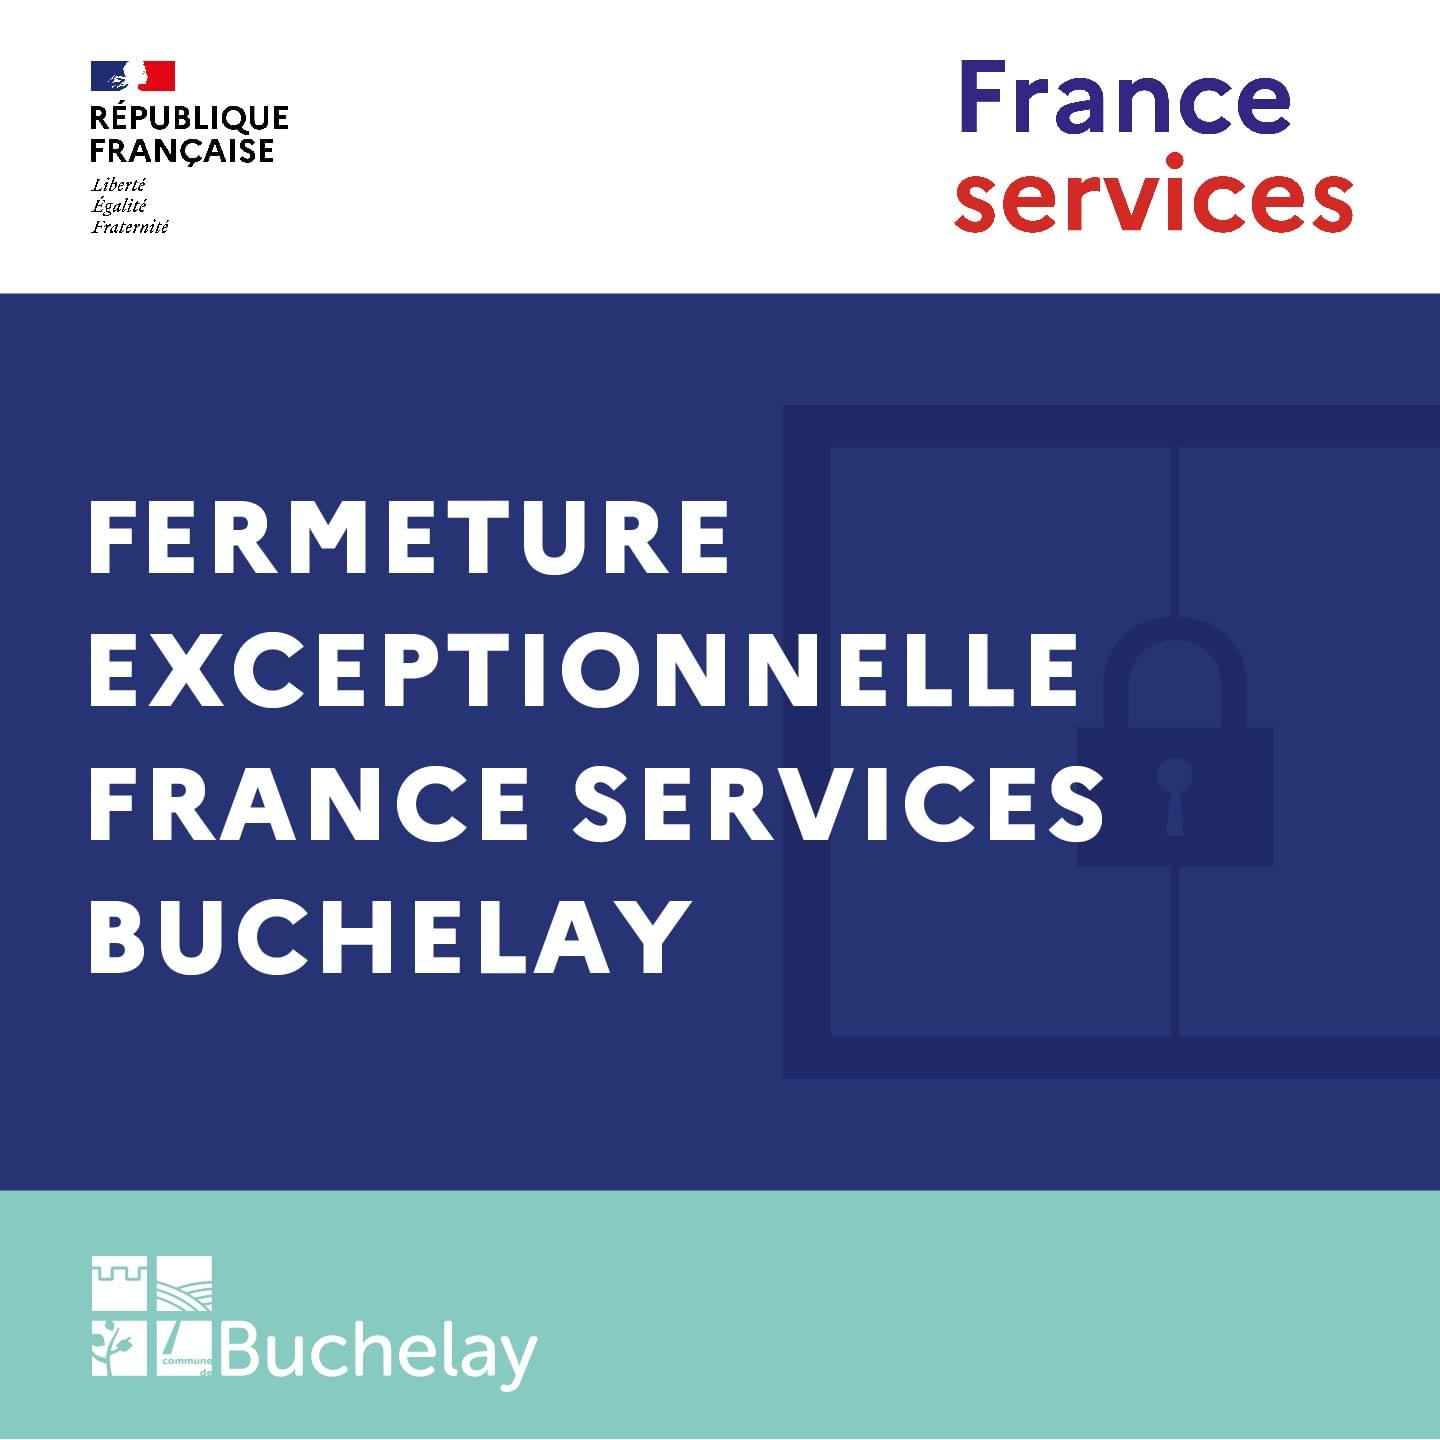 Fermeture exceptionnelle France services